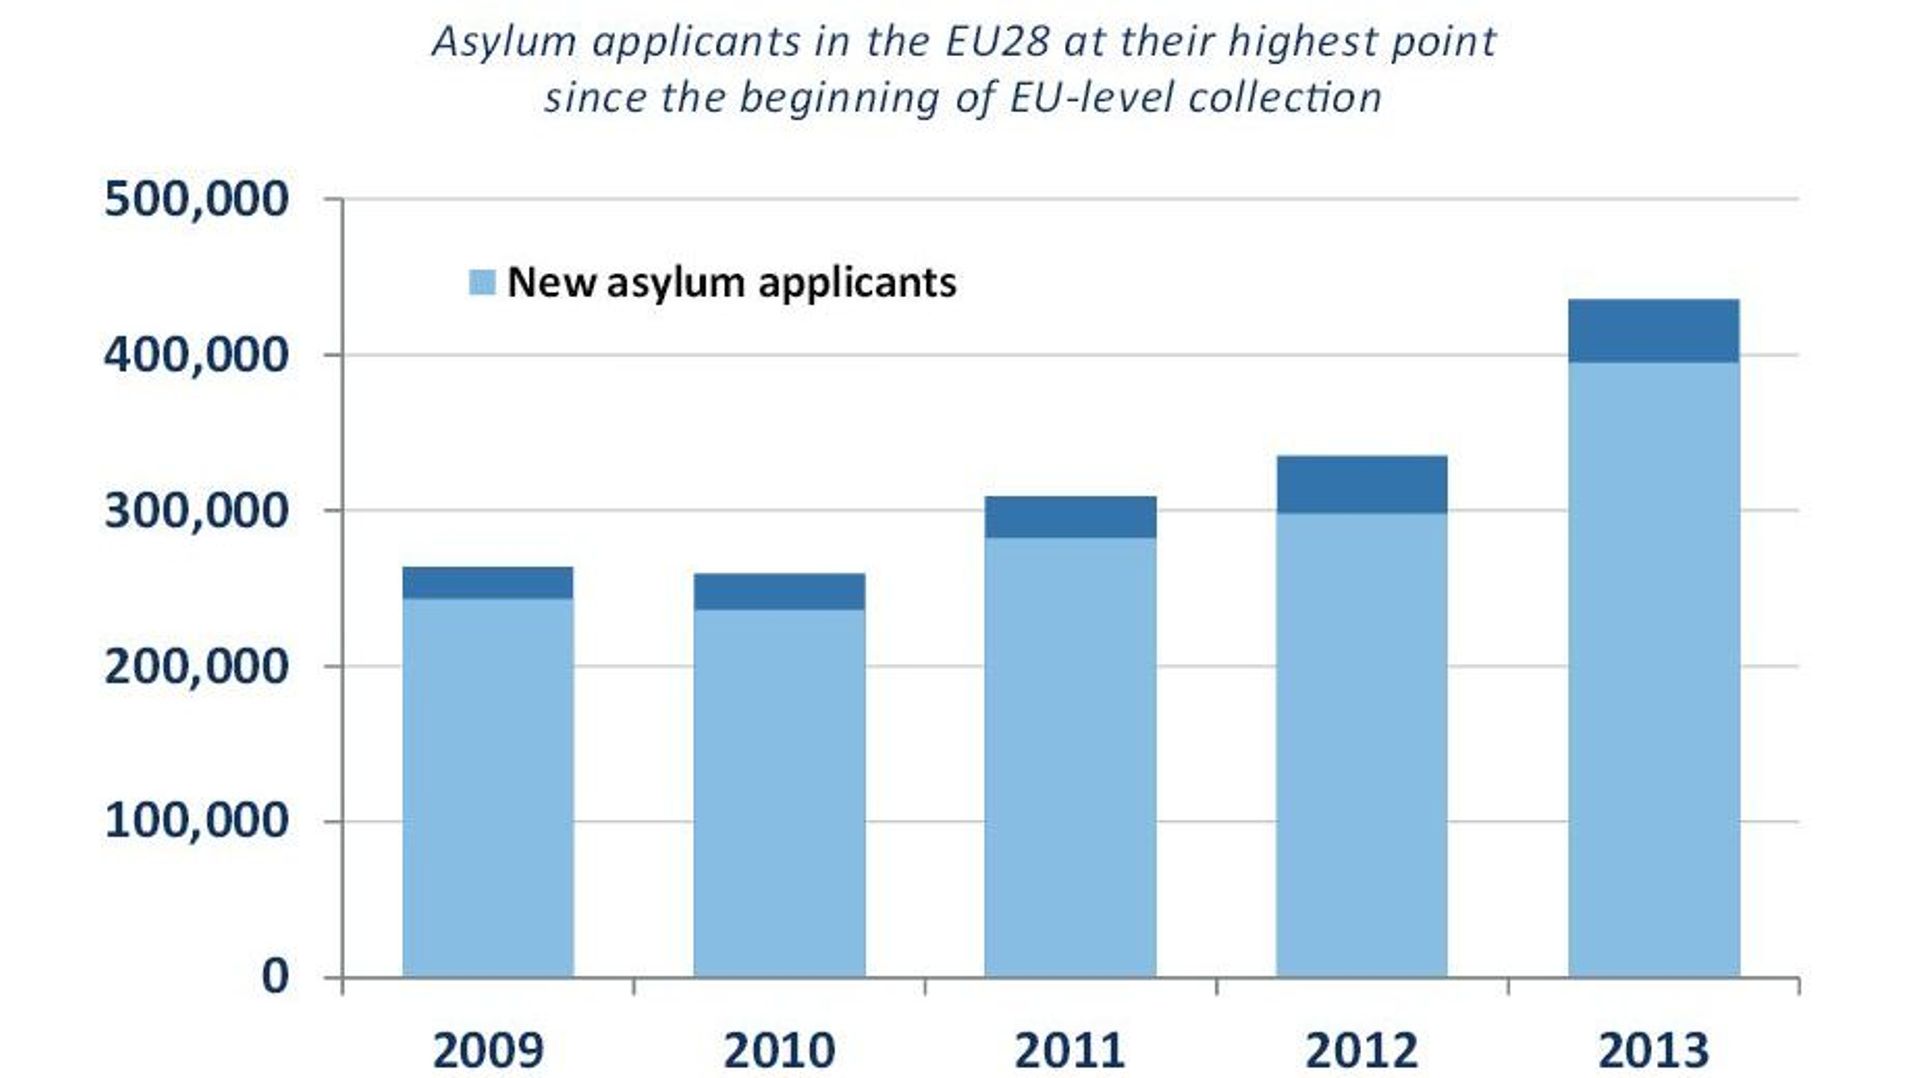 Les demandeurs d'asile au sein de l'UE depuis 2009 jusqu'à 2013